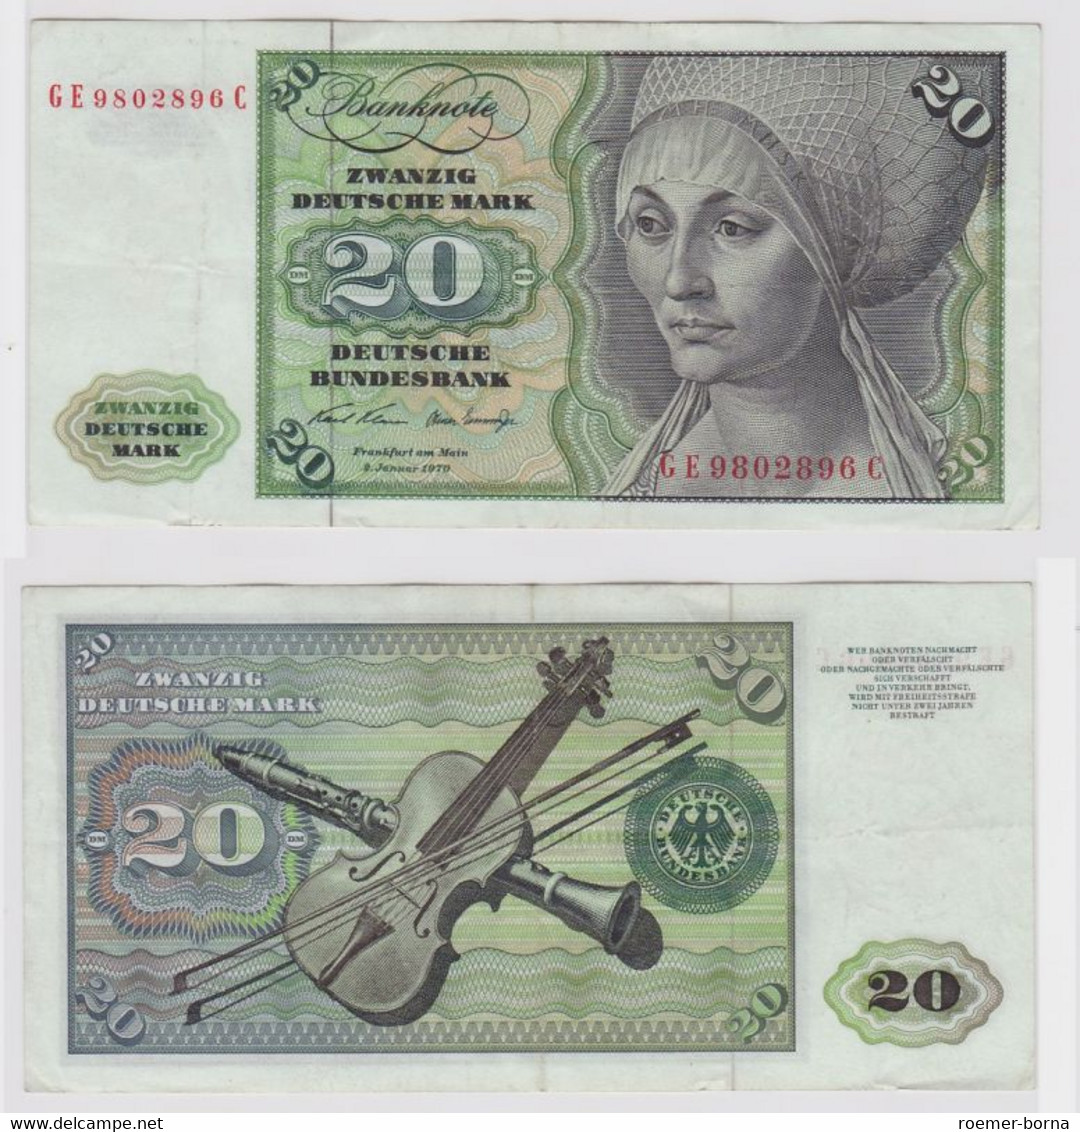 T148342 Banknote 20 DM Deutsche Mark Ro. 271b Schein 2.Jan. 1970 KN GE 9802896 C - 20 DM